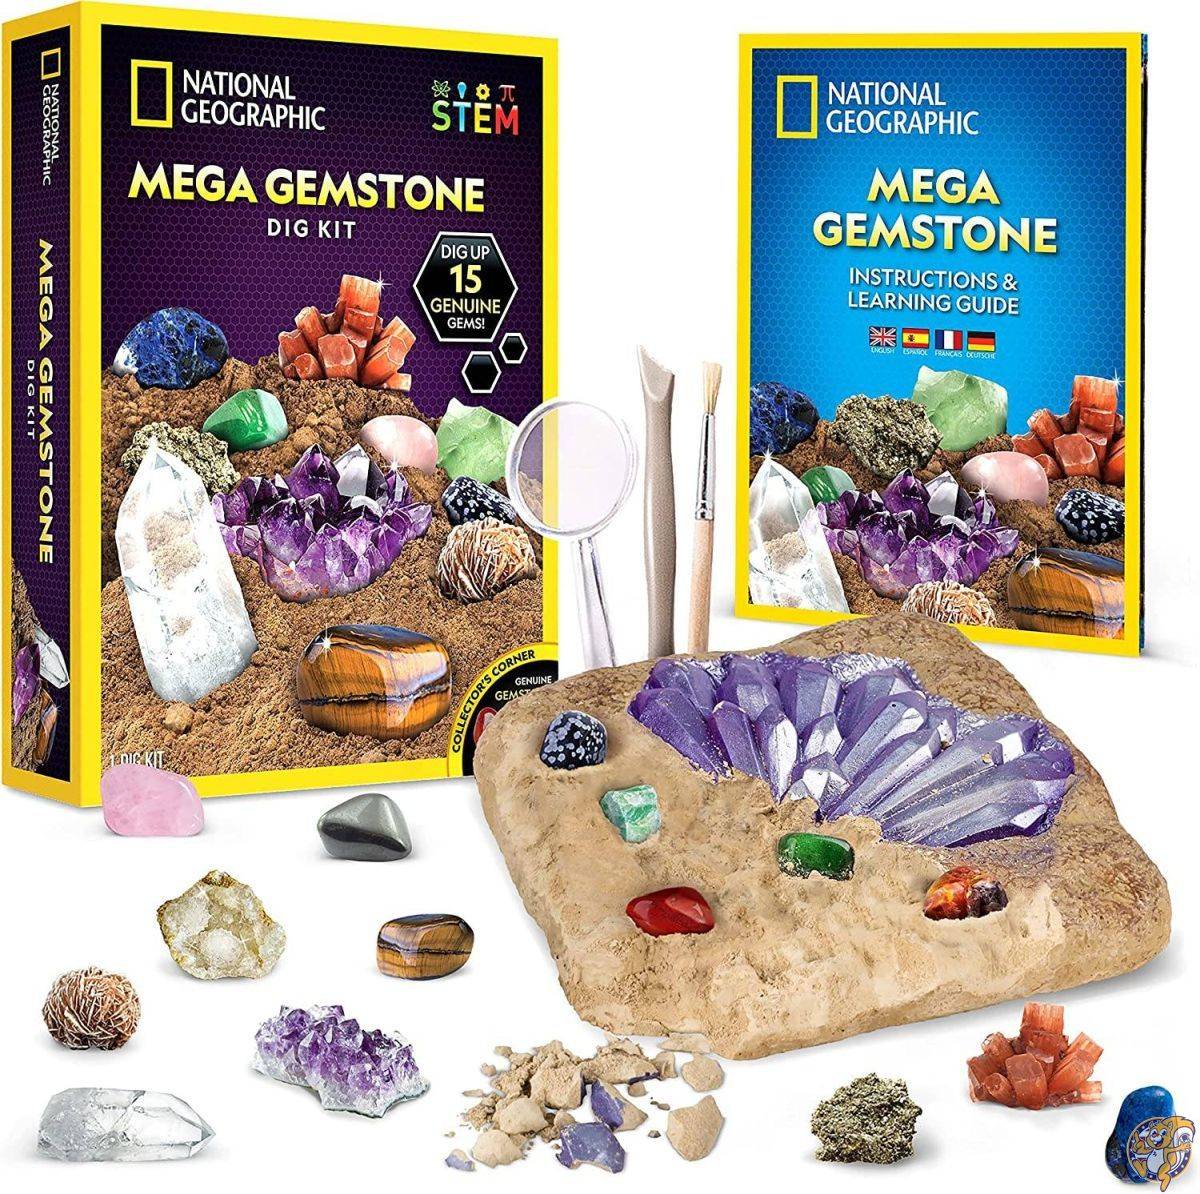 [ナショナルジオグラフィック]National Geographic Mega Gemstone Mine Dig Up 15 Real Gems